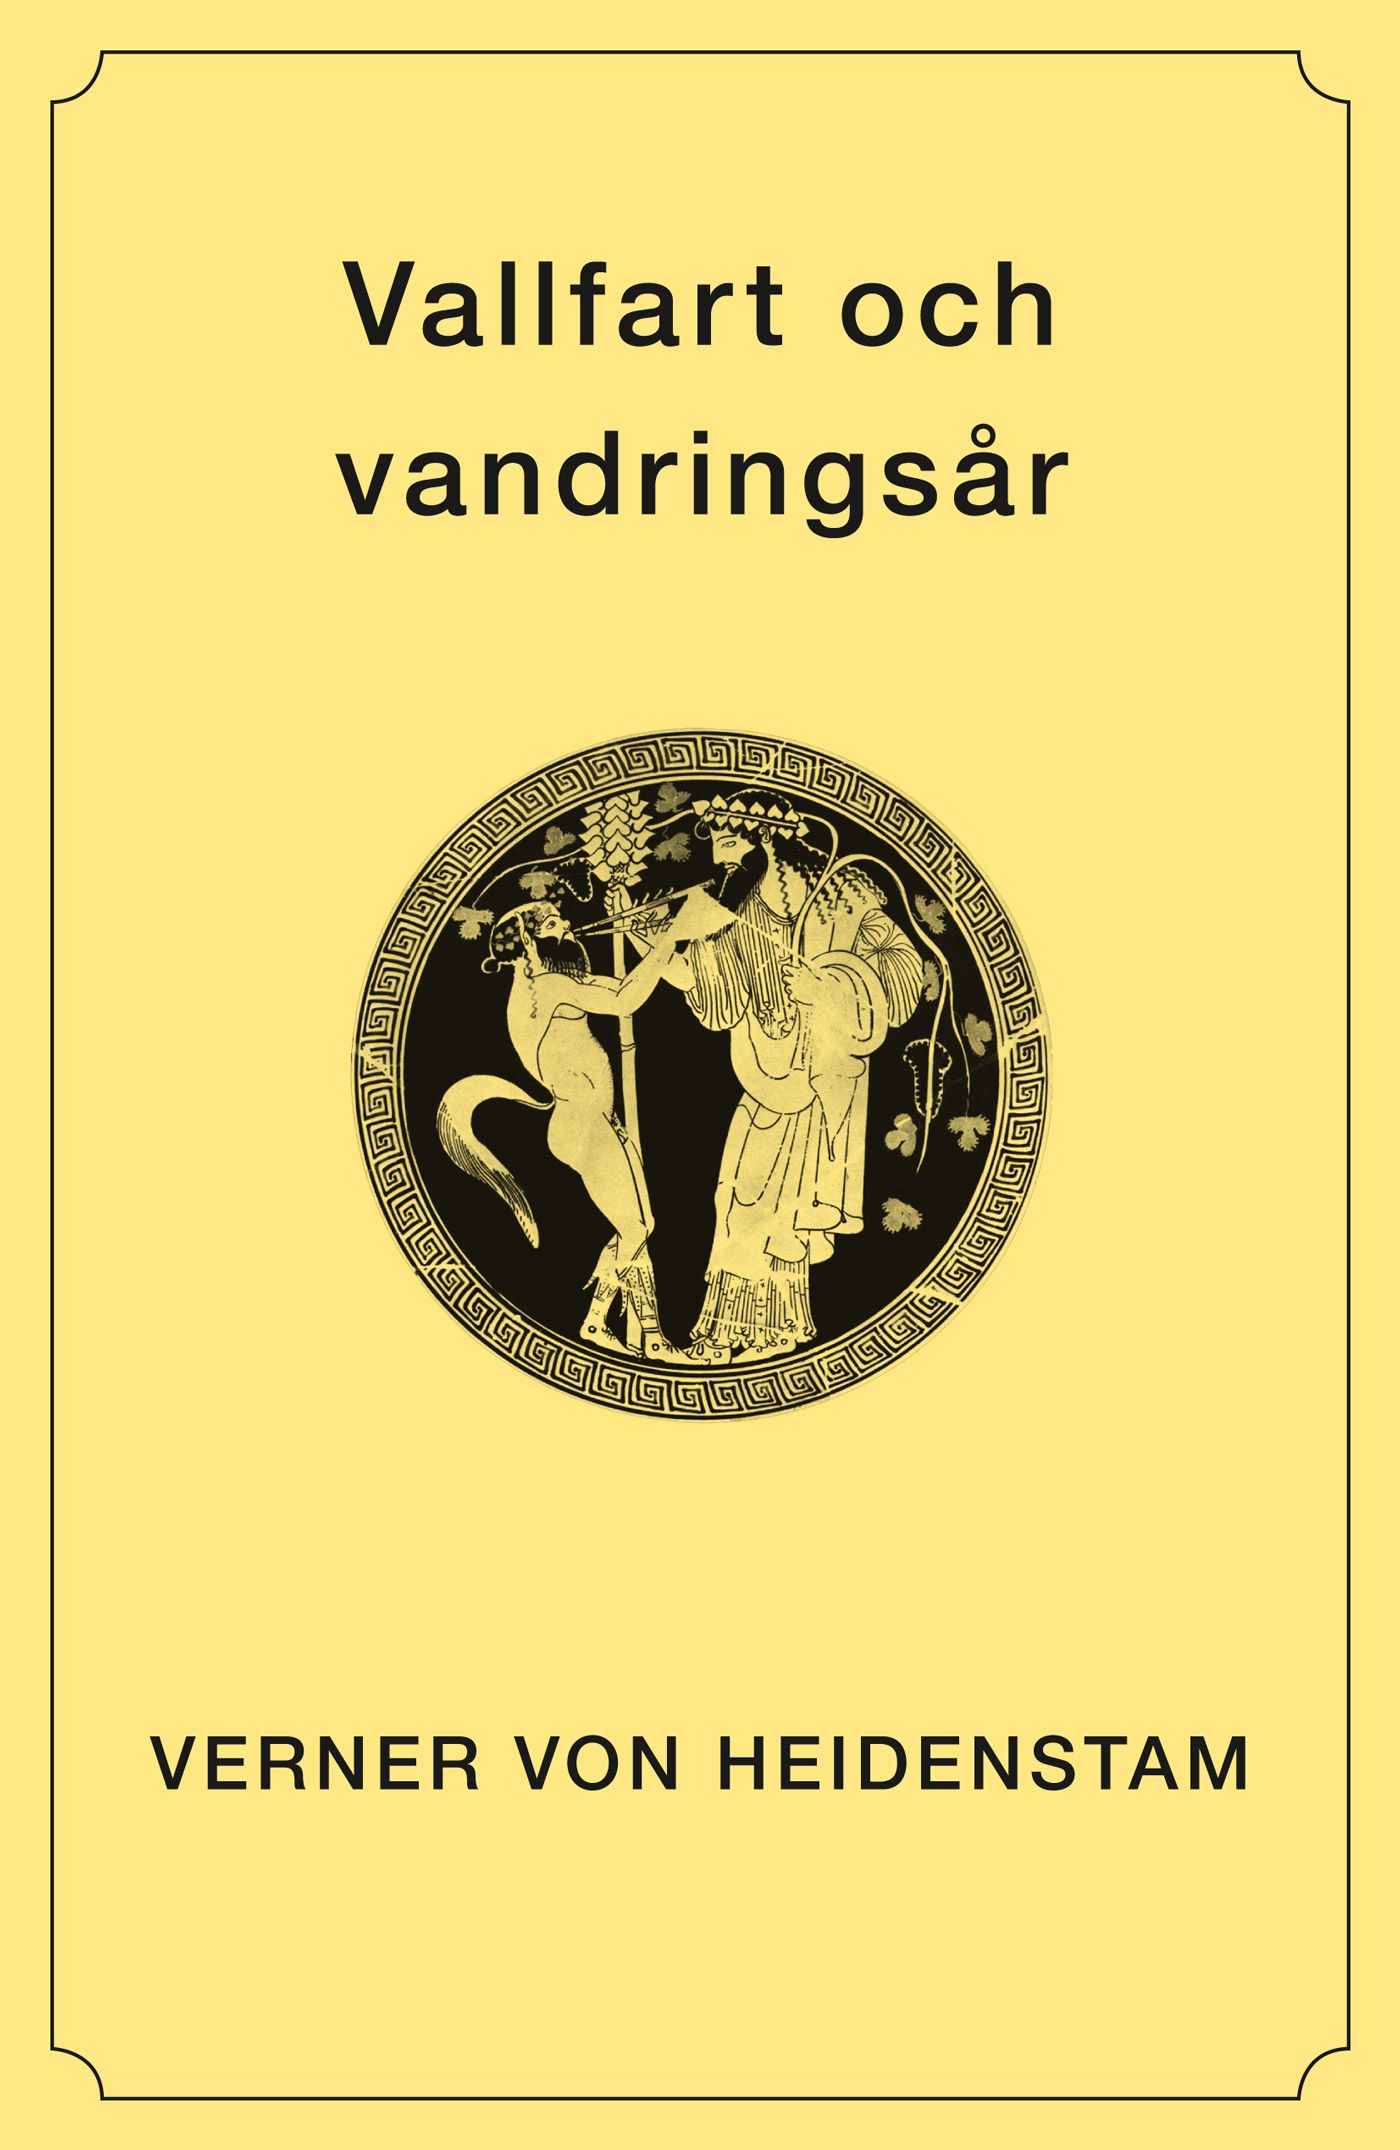 Vallfart och vandringsår, e-bog af Verner von Heidenstam